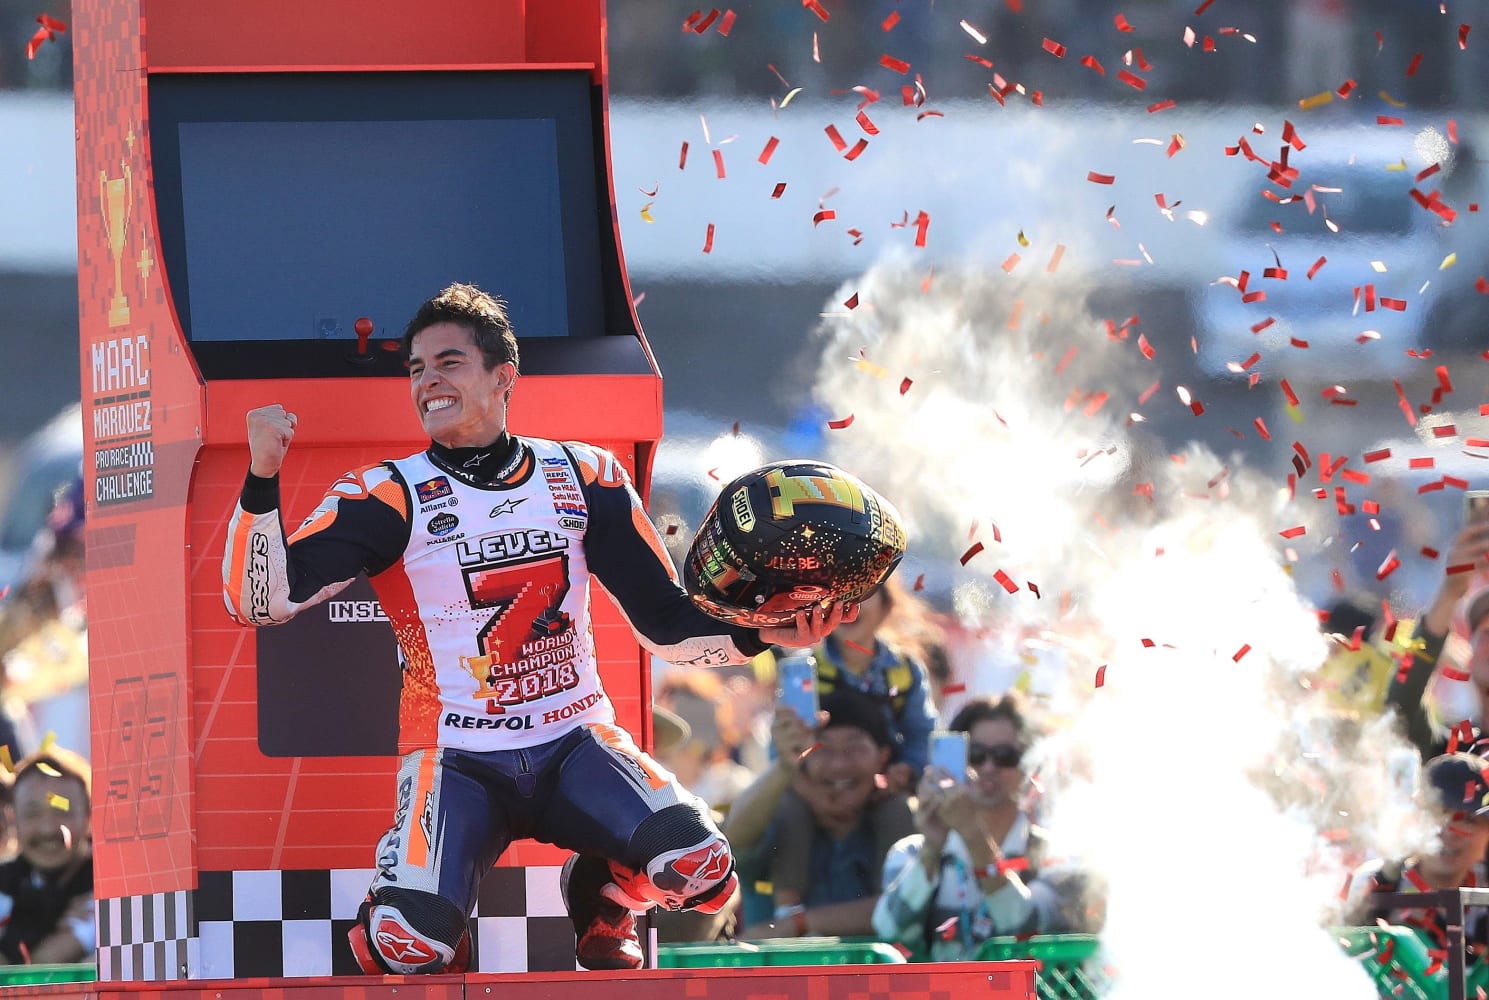 Marc Márquez MotoGP career recap, bio